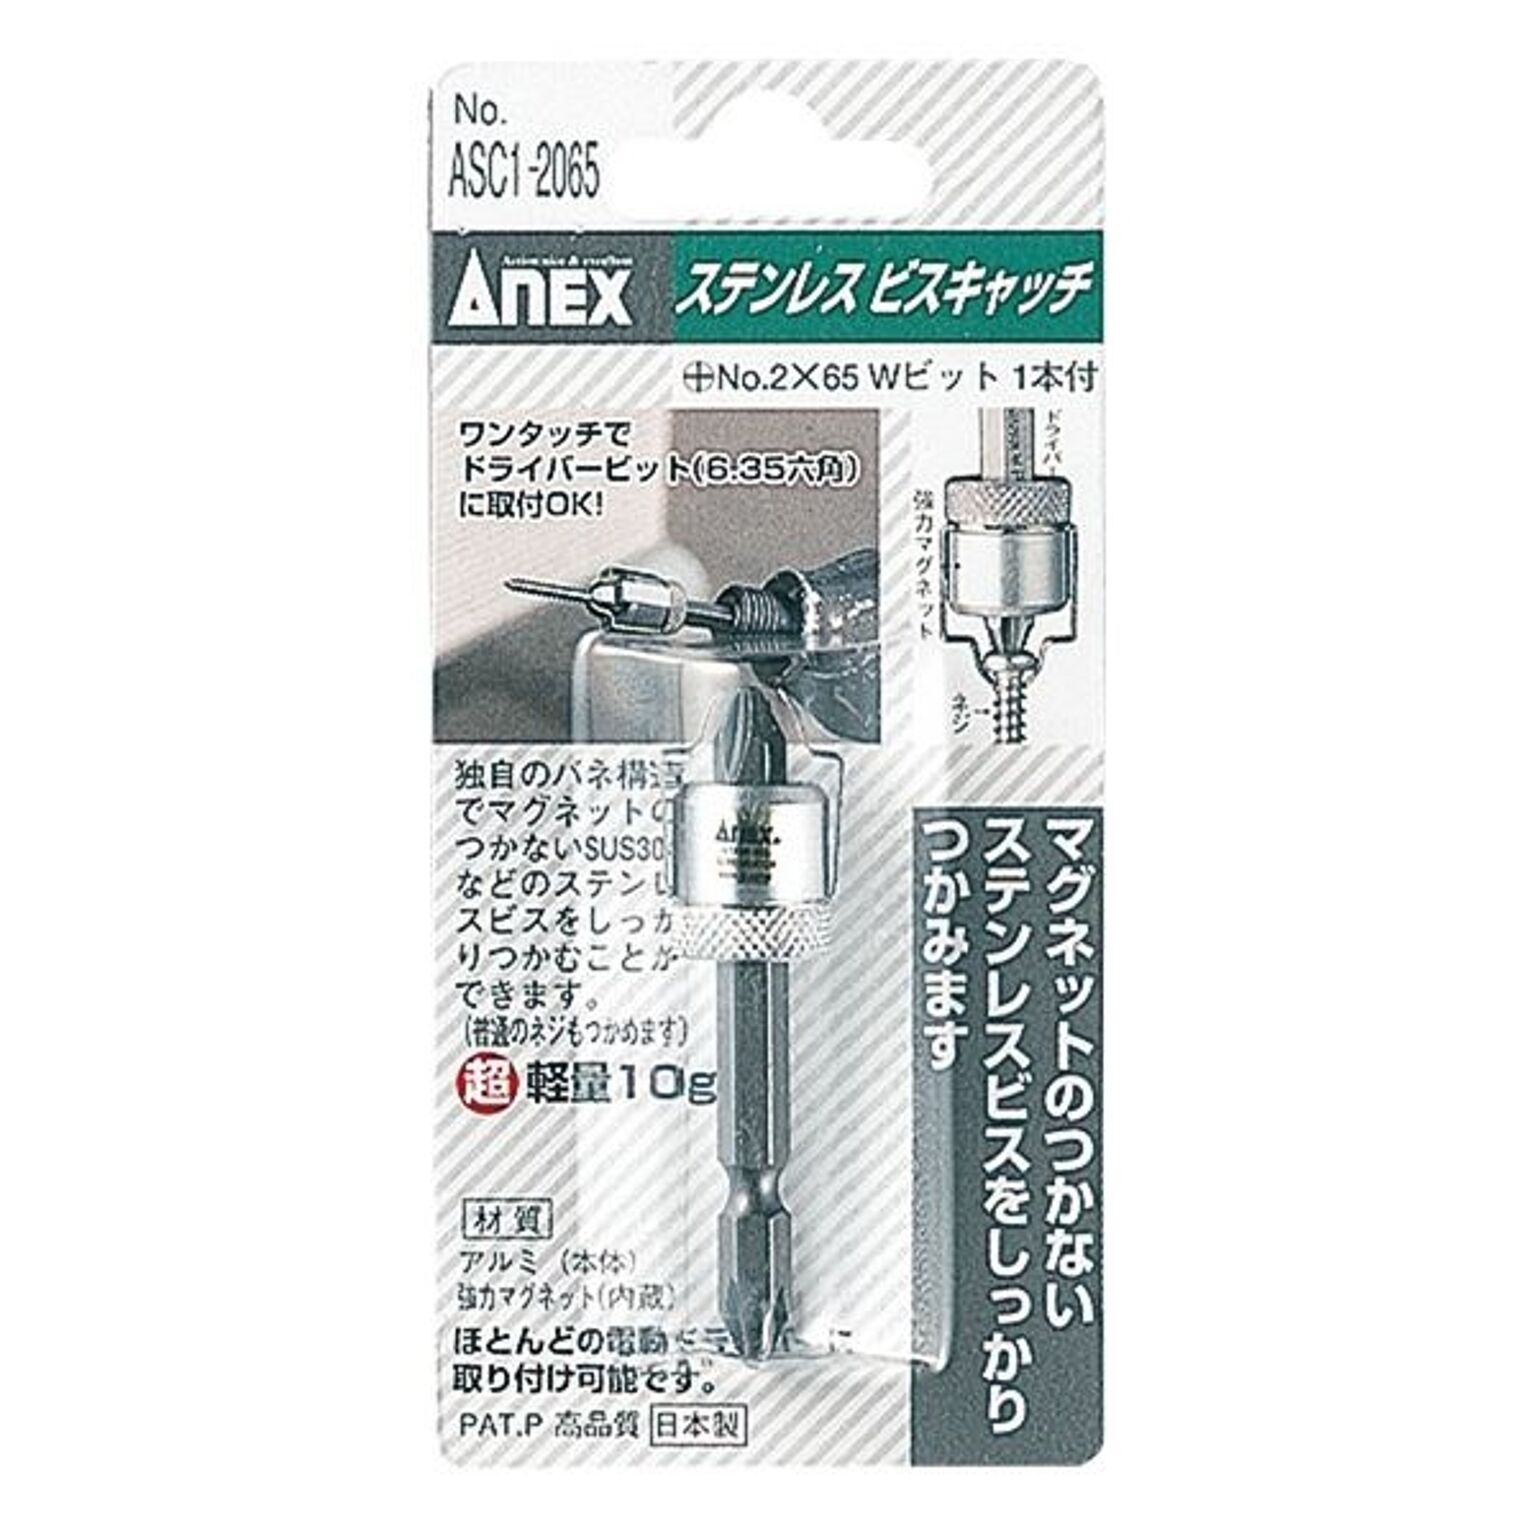 ANEX ASC1-2065 六角軸ステンレスビスキャッチ